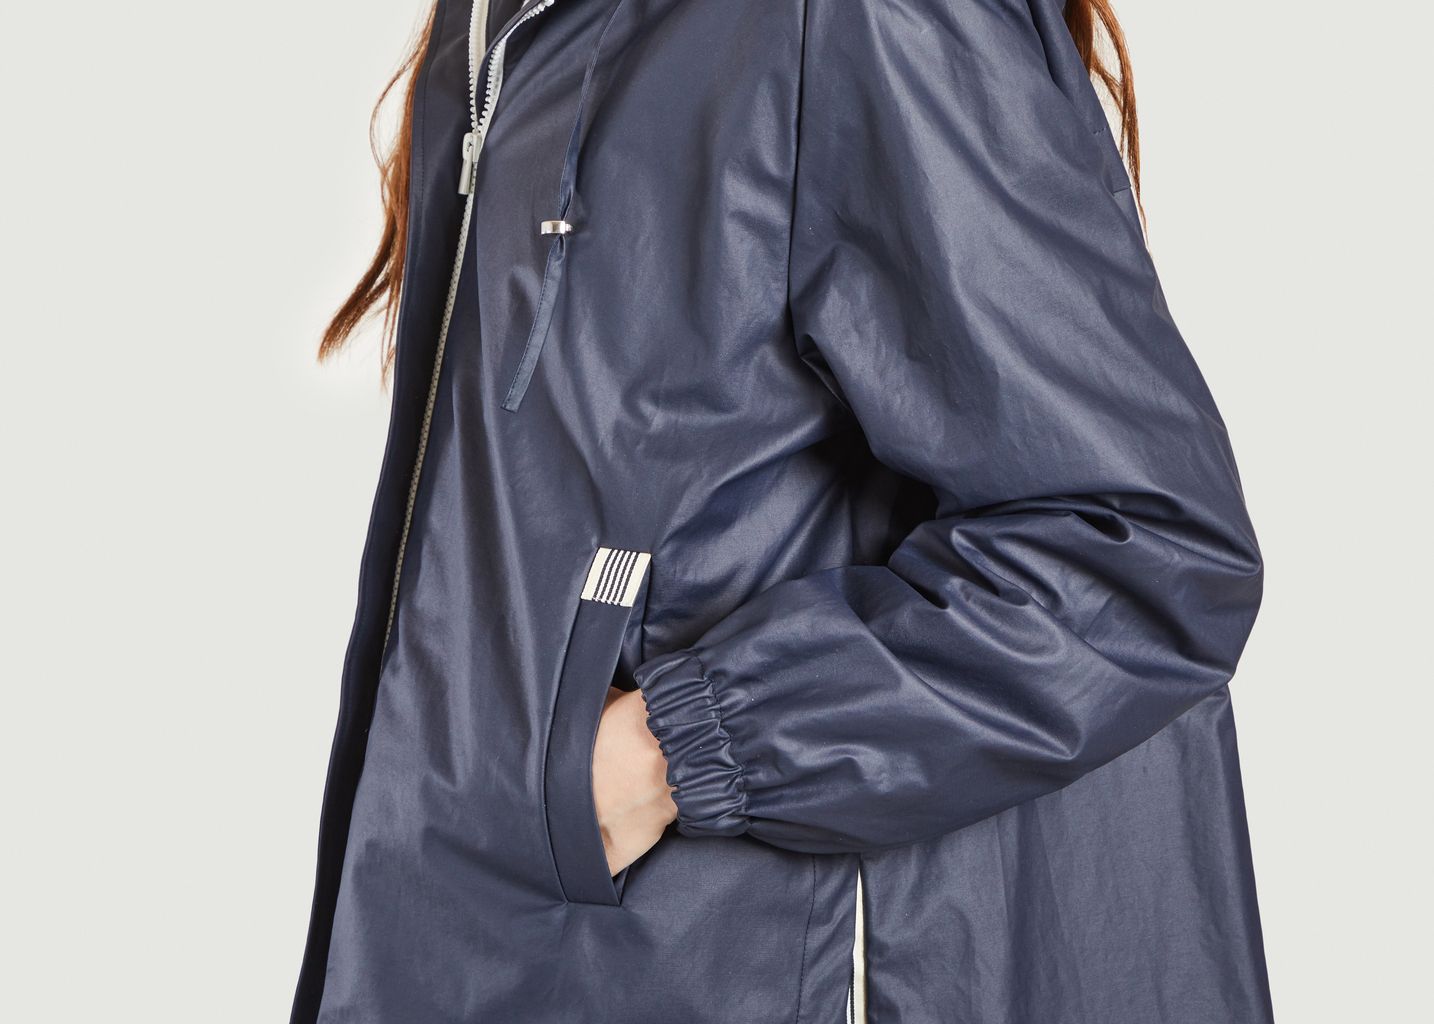 Short hooded jacket Mimizan - Trench And Coat